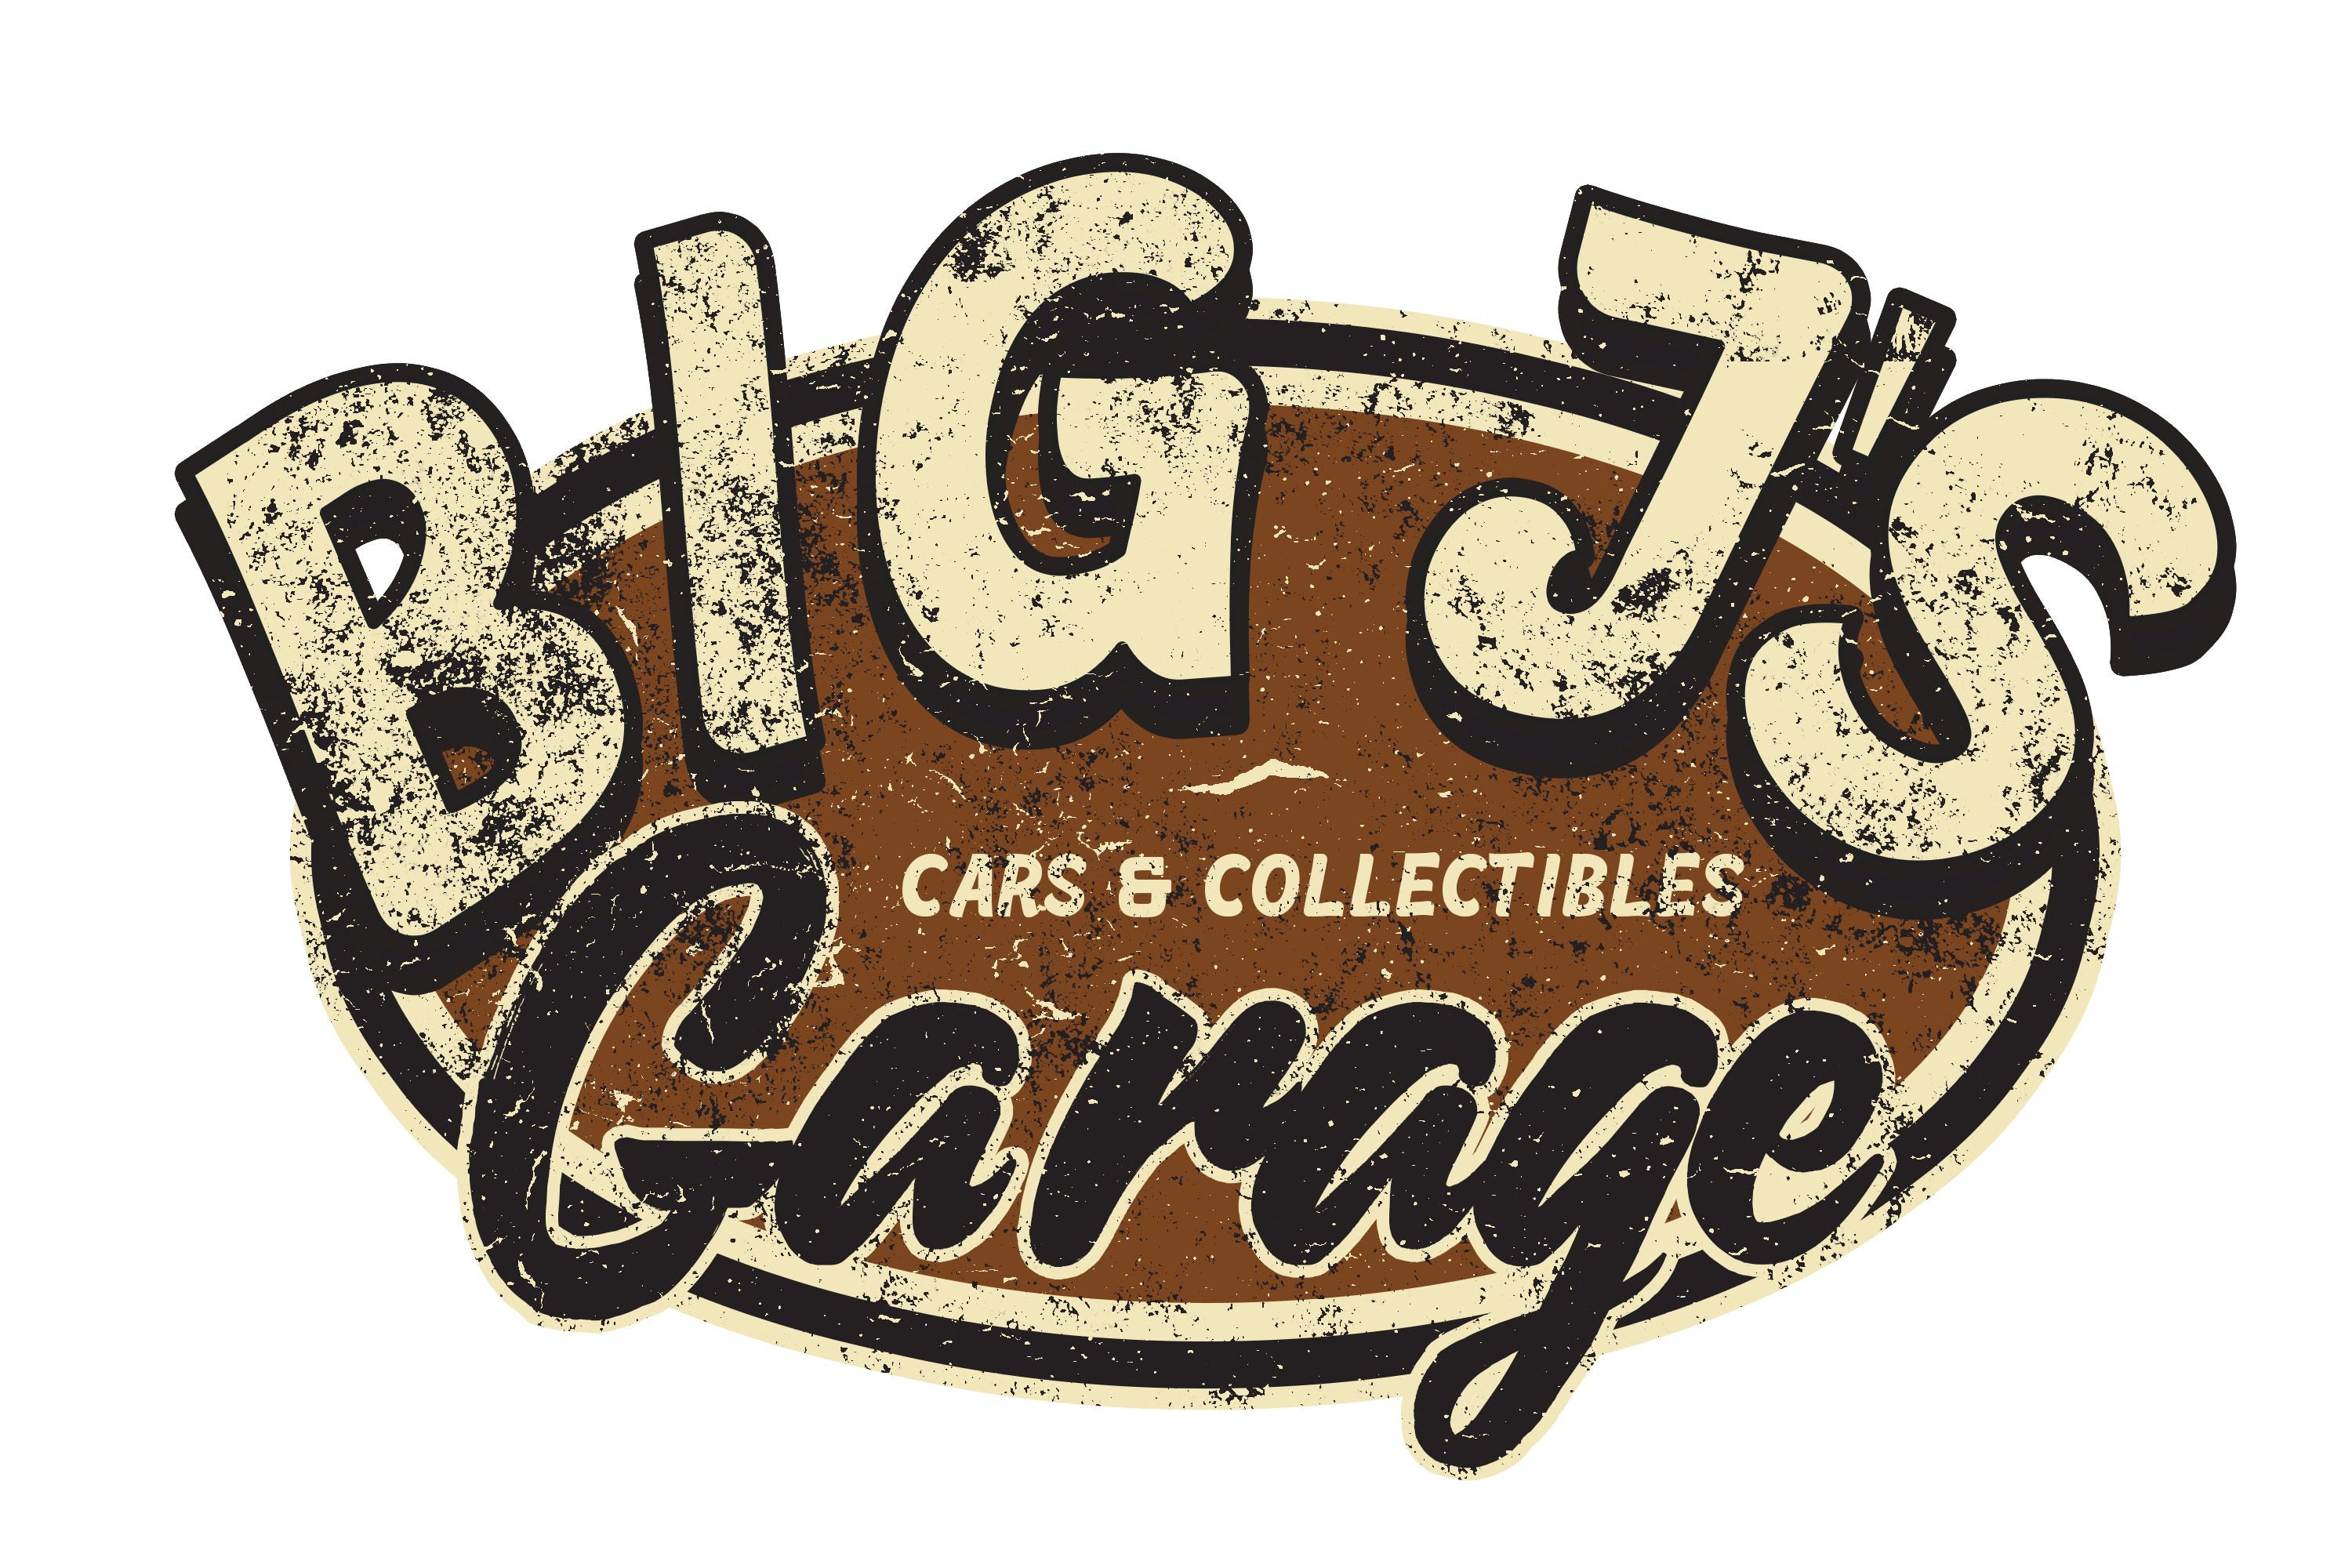 Where to find us! – Big J's Garage